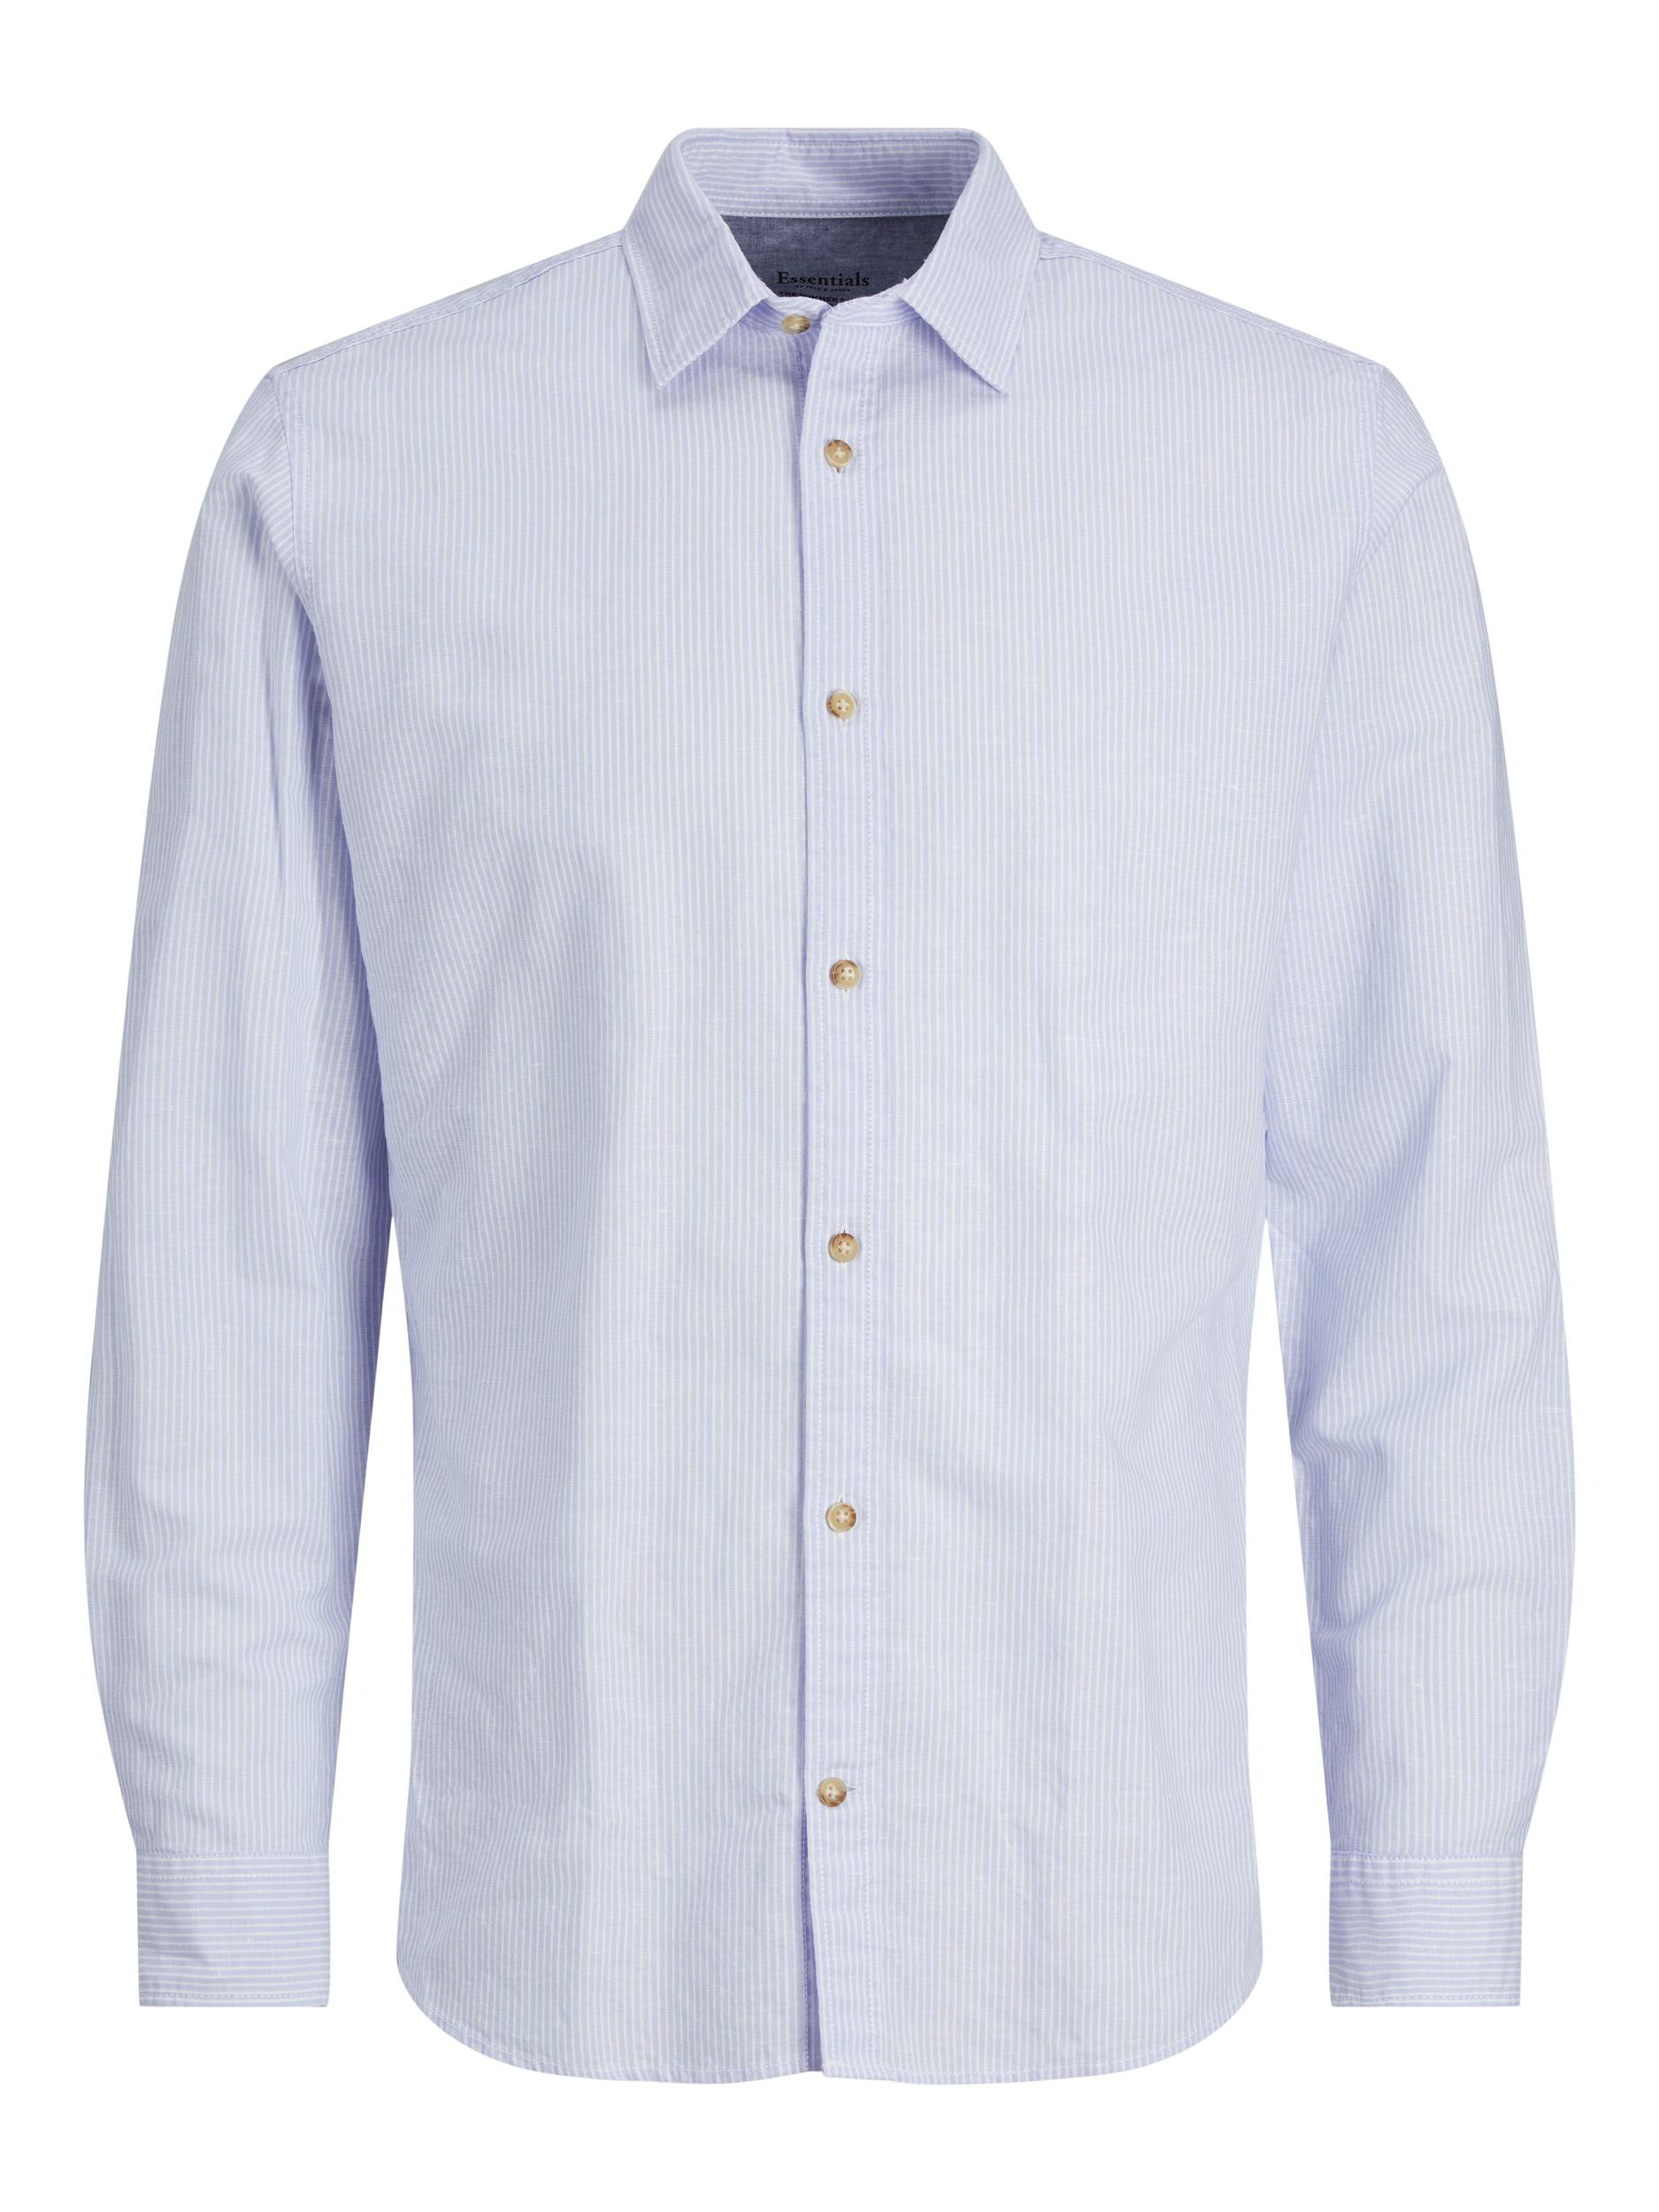 Jack & Jones - Slim fit striped shirt, Light Blue, large image number 0